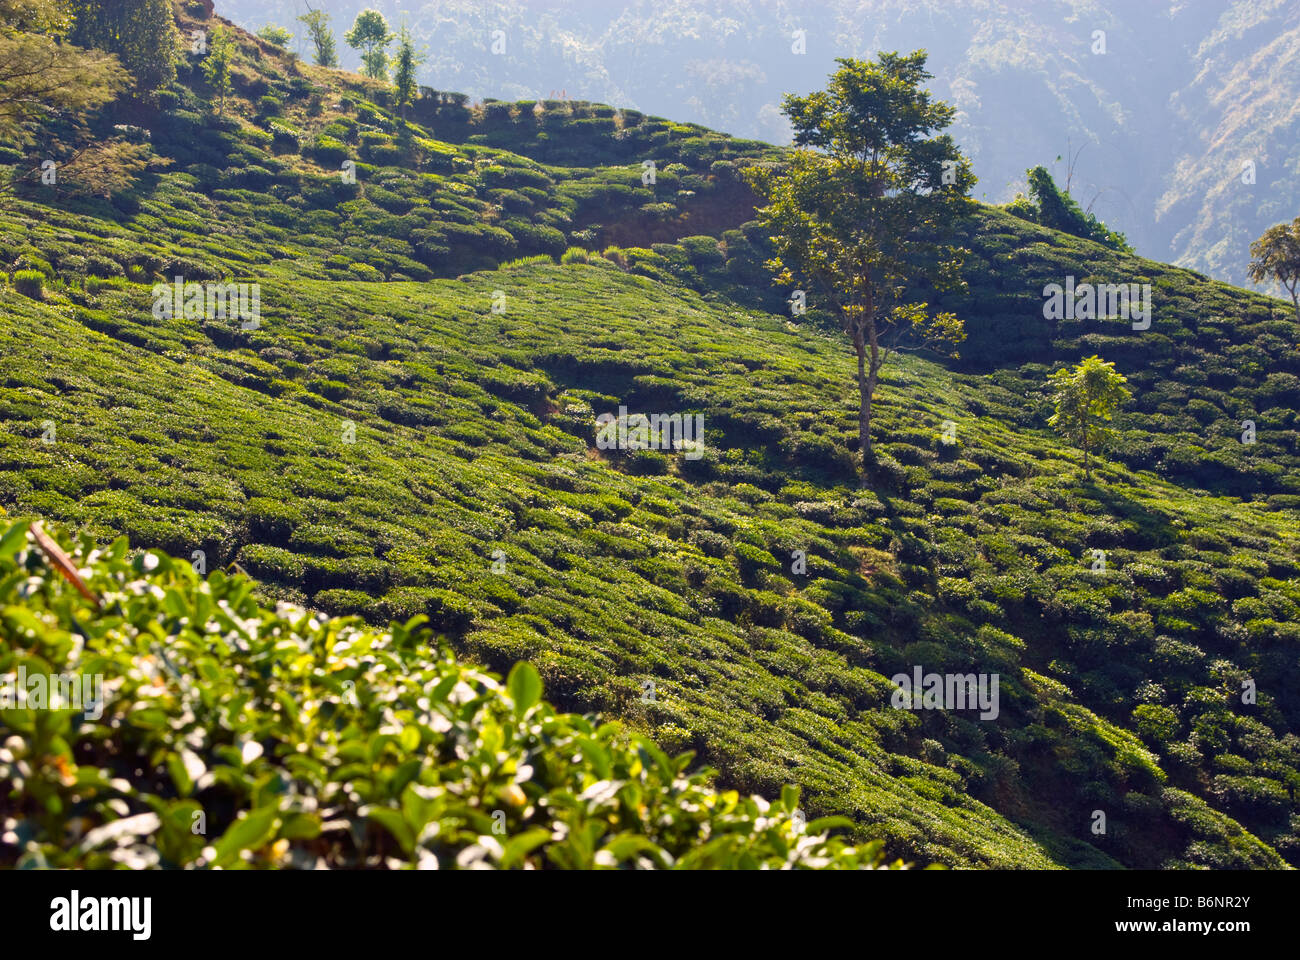 Glenburn Tea Estate, Darjeeling, India Stock Photo